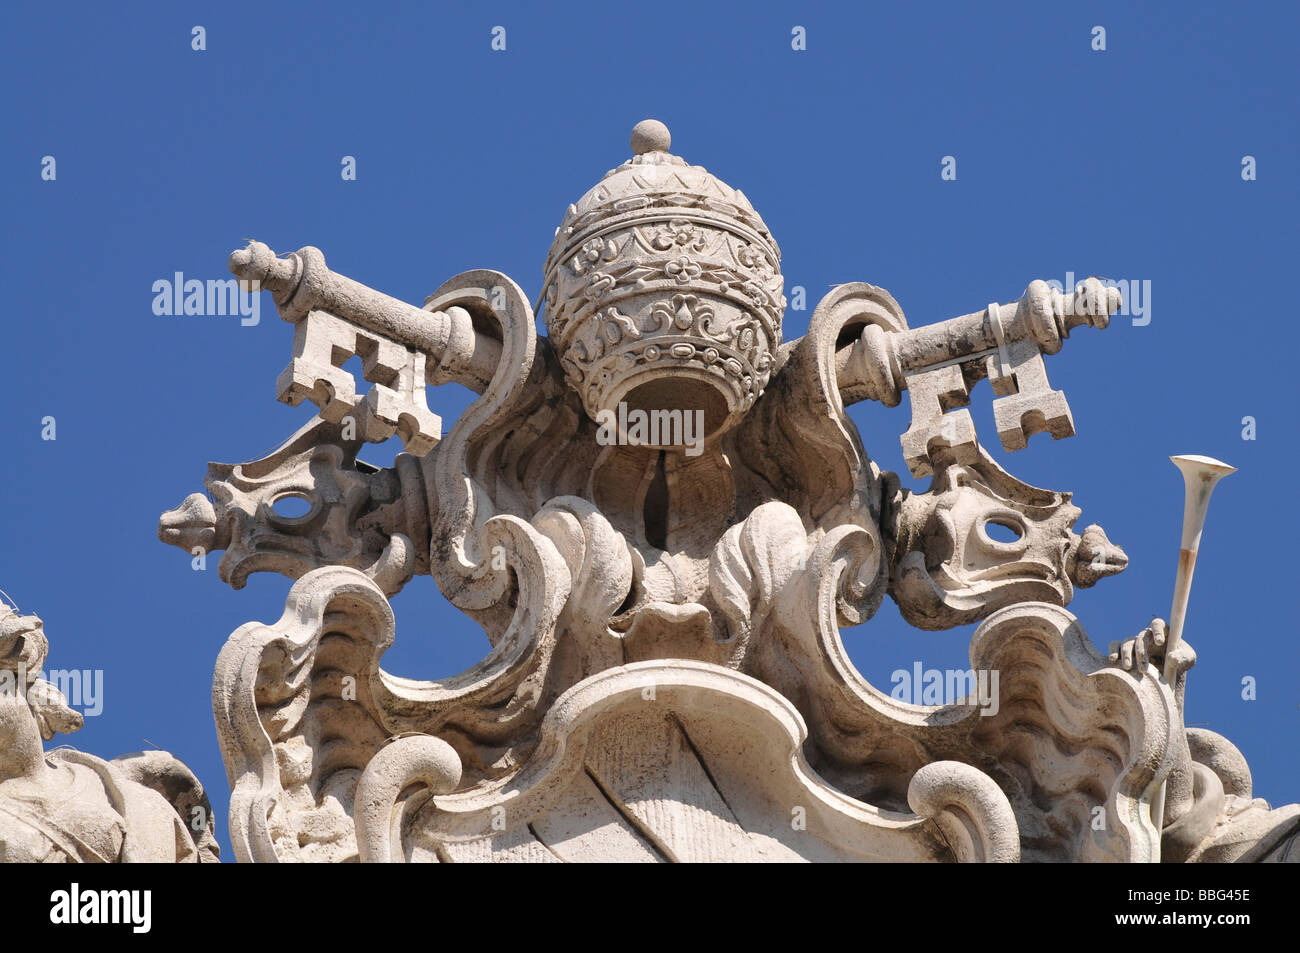 Couronne avec des clés, détail de la Fontana di Trevi, fontaine de Trevi, du centre historique de la ville, Rome, Italie, Europe Banque D'Images